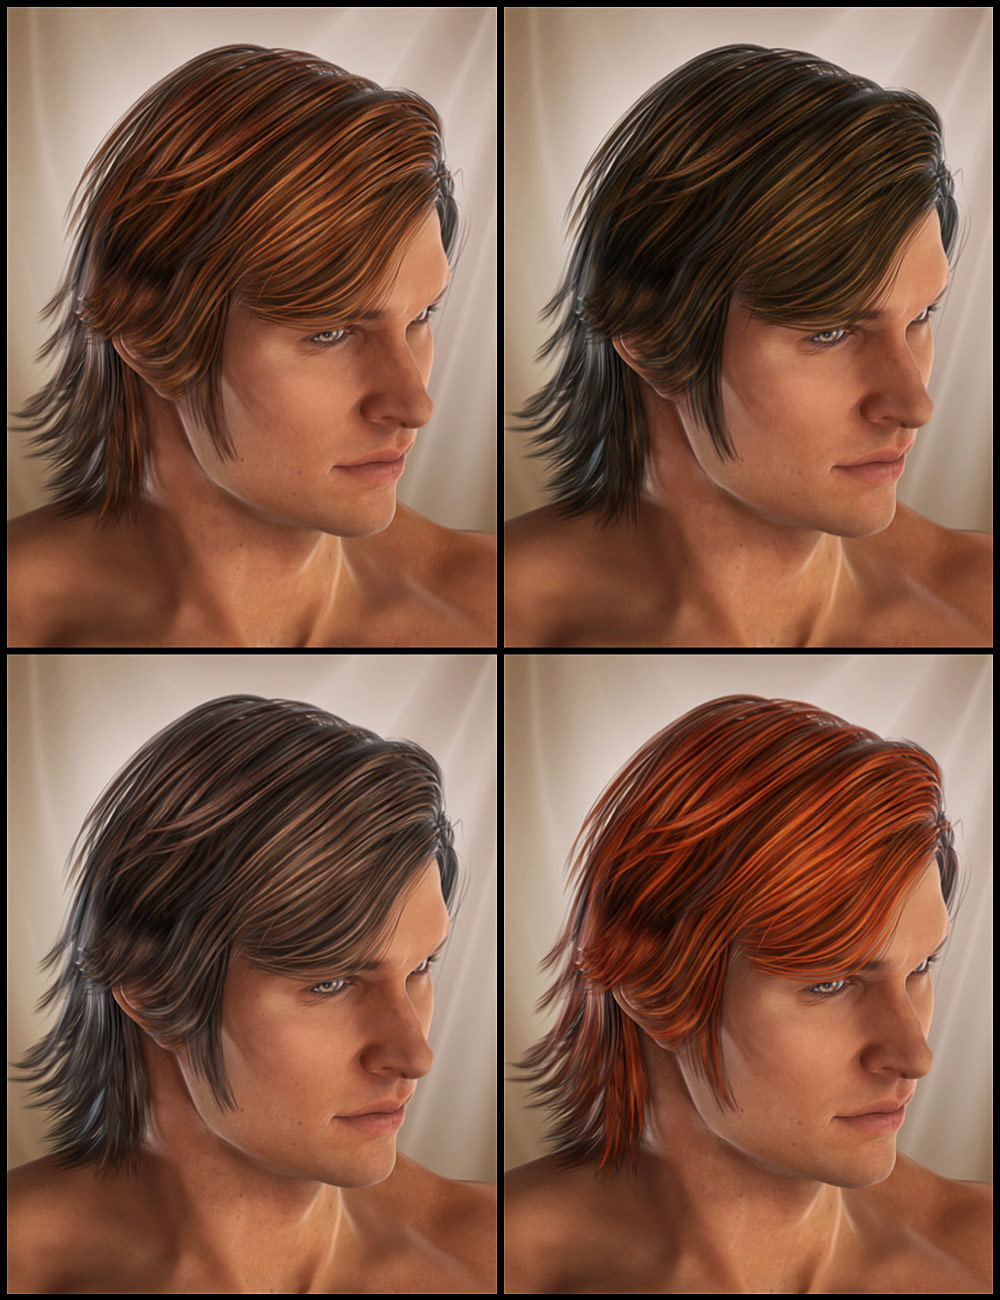 Drifter Hair for Genesis 2 Male(s) by: goldtassel, 3D Models by Daz 3D